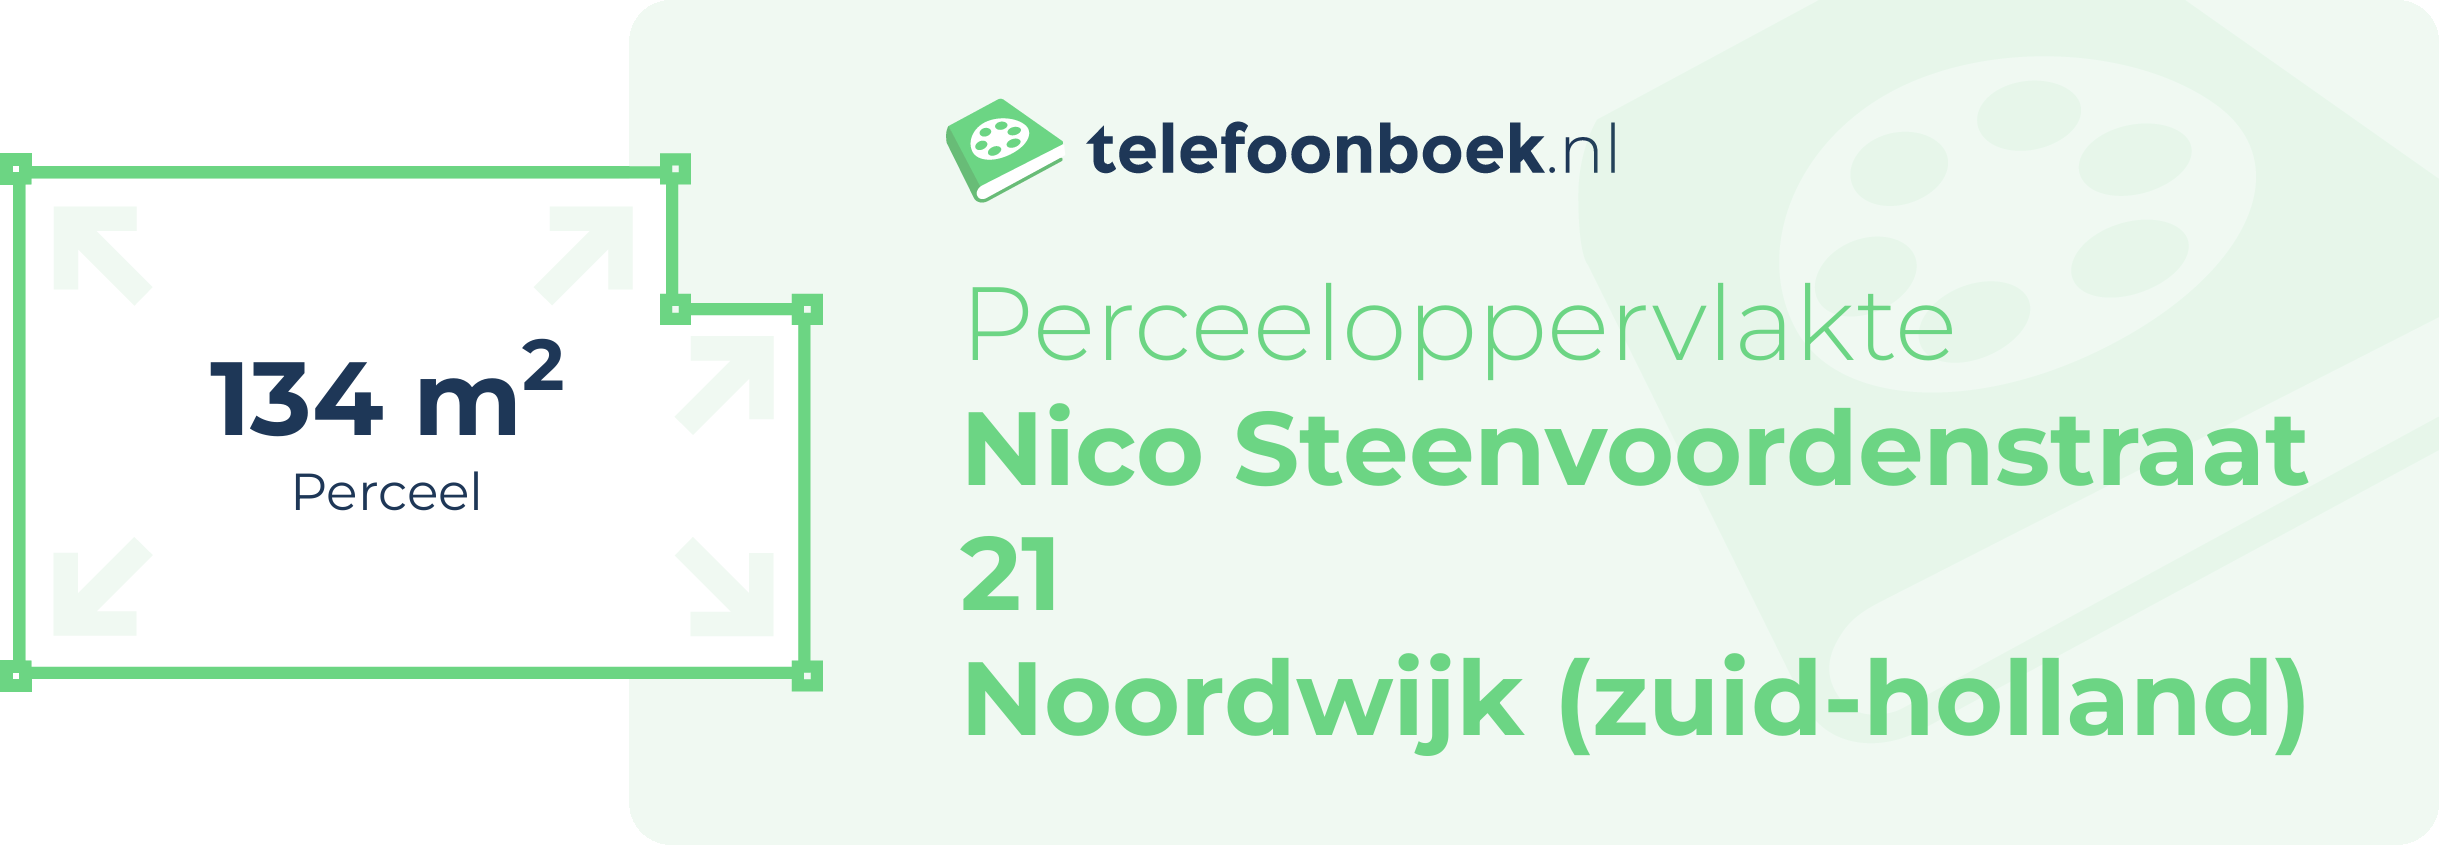 Perceeloppervlakte Nico Steenvoordenstraat 21 Noordwijk (Zuid-Holland)